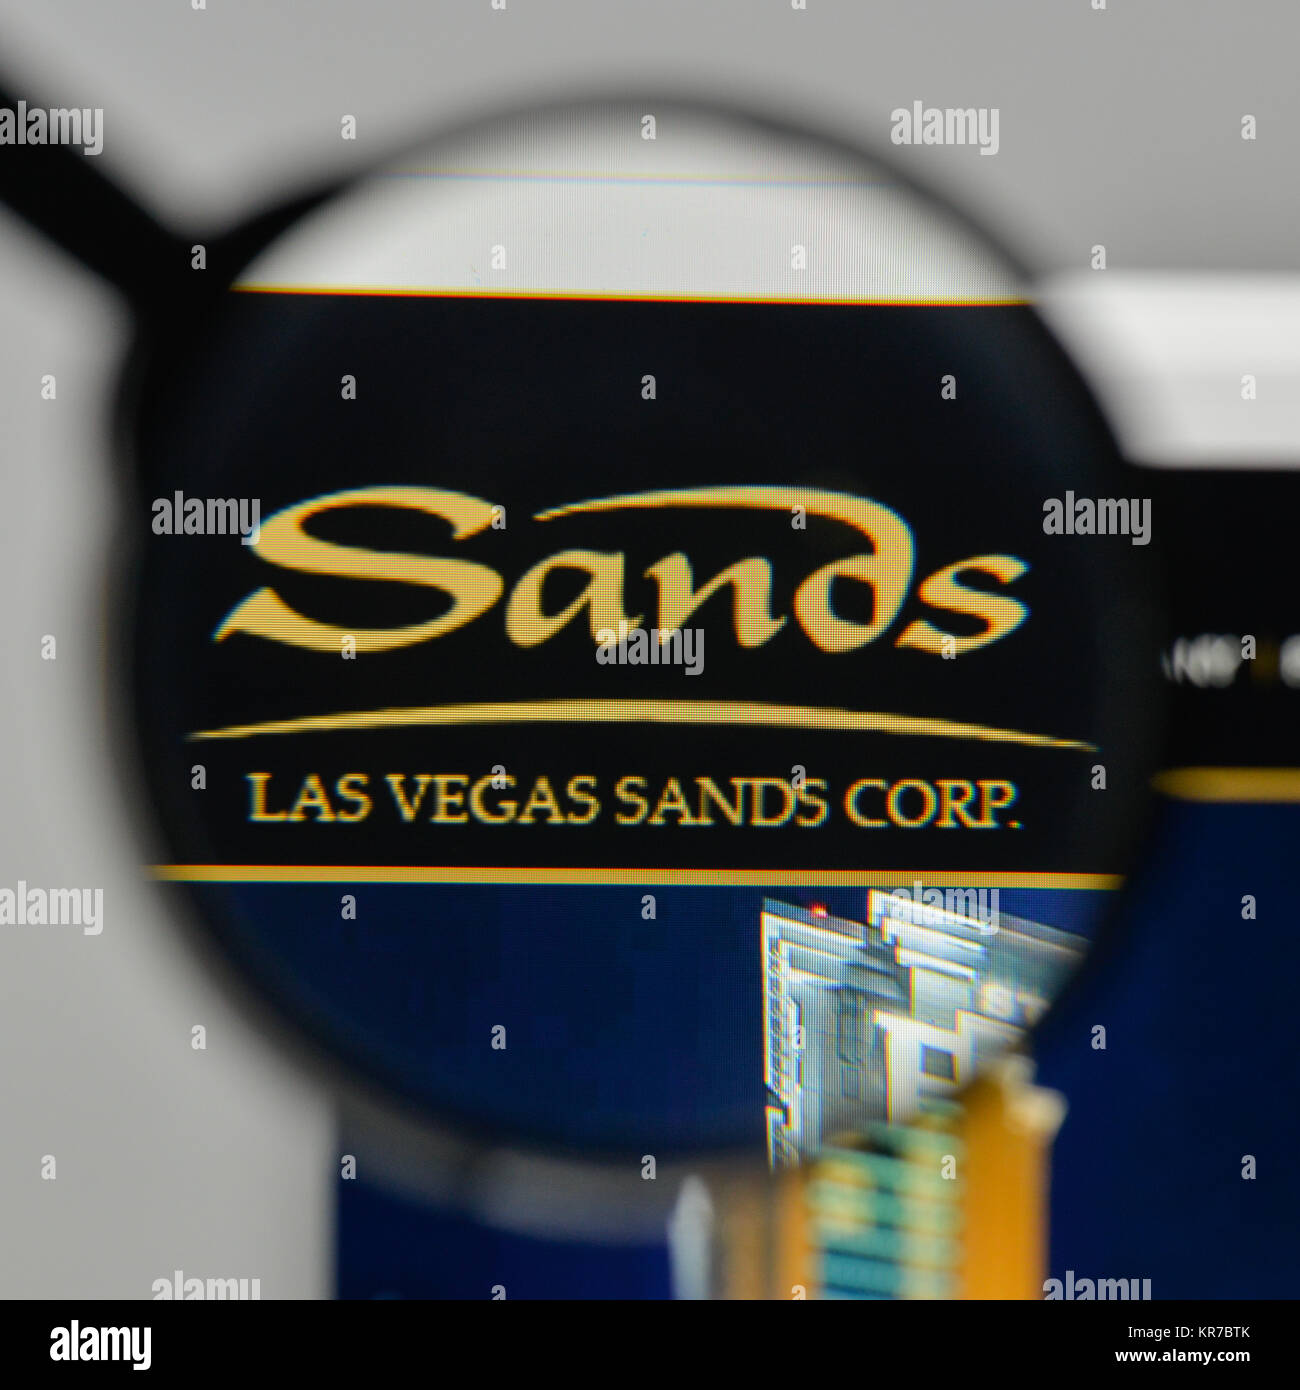 157 Las Vegas Sands Corporation Images, Stock Photos, 3D objects, & Vectors